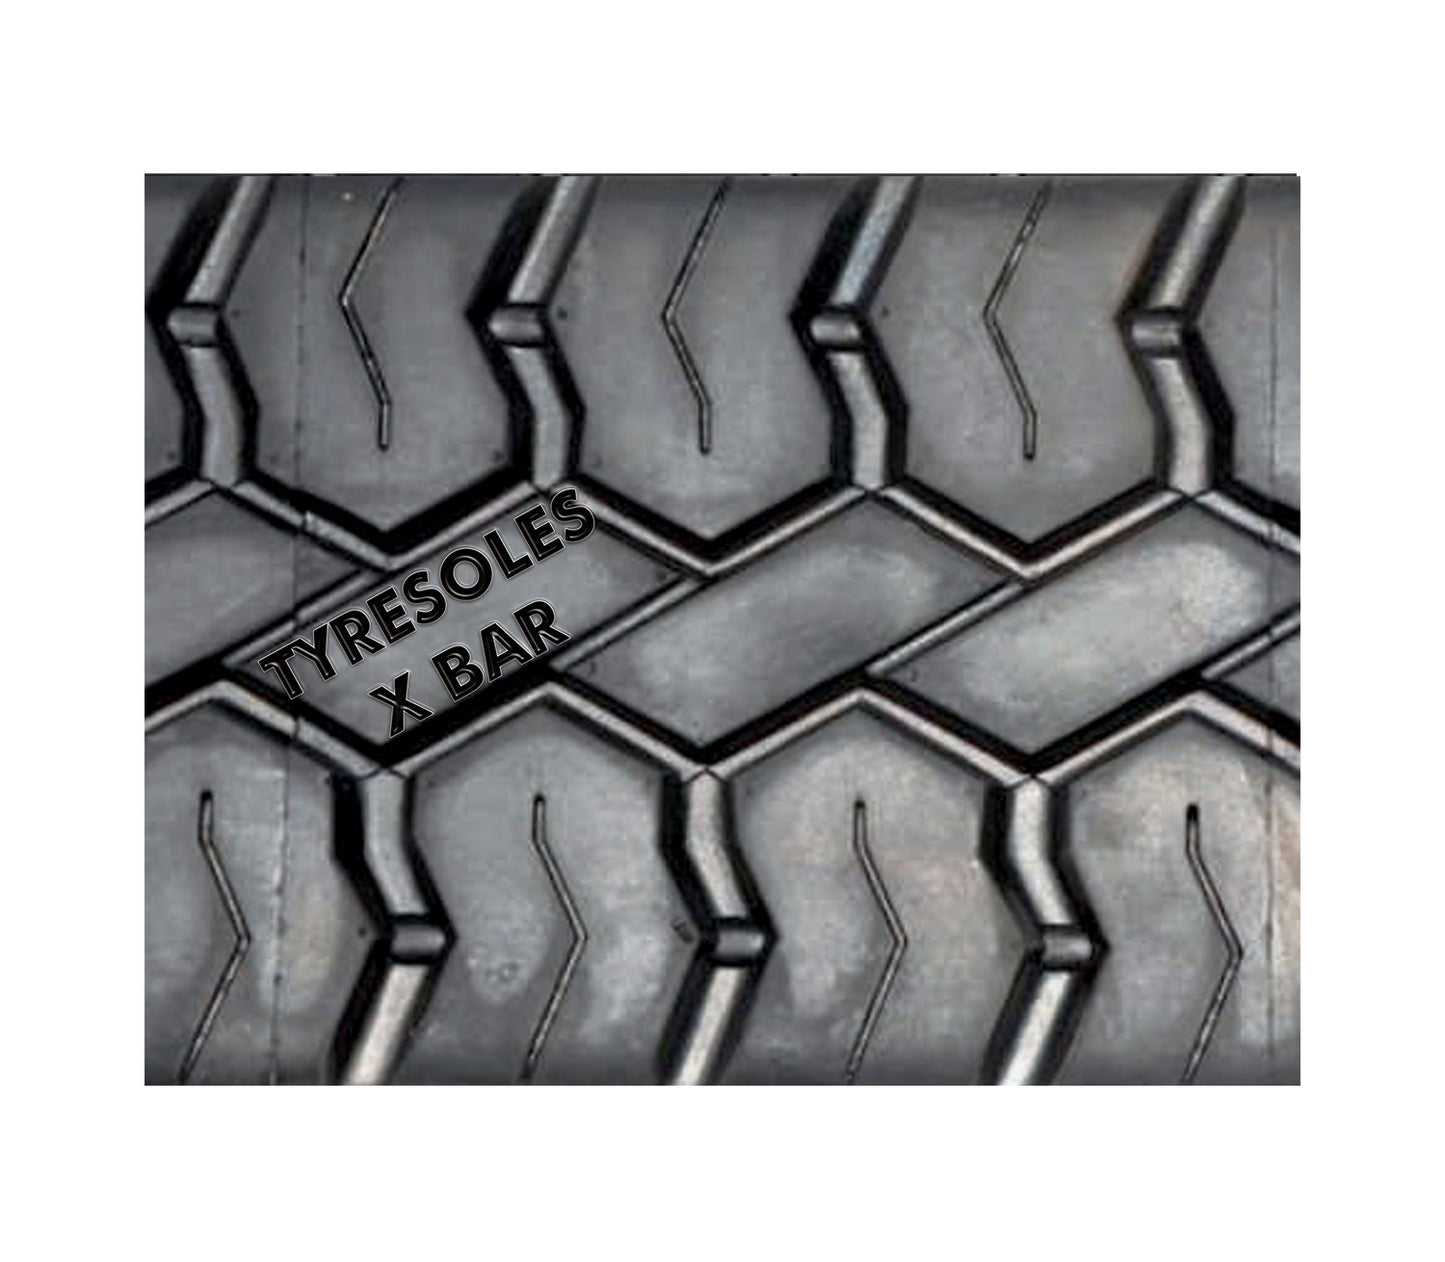 Tyresoles Ecomiles Certified Retreaded Truck Tyres 1000*20